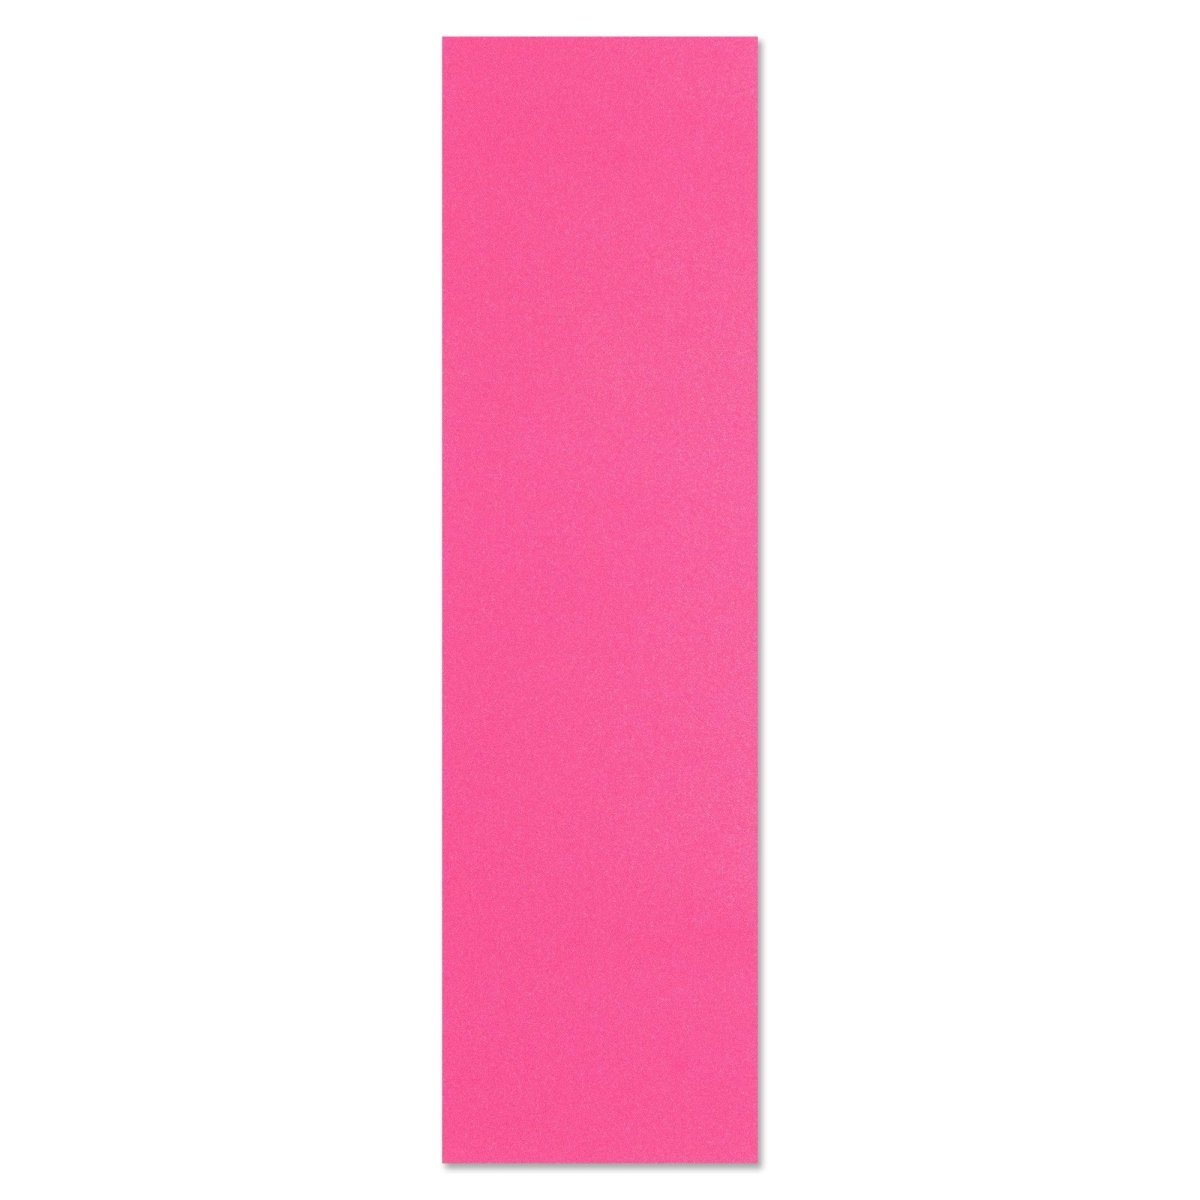 Pink Griptape Sheet - Skateboard - Griptape